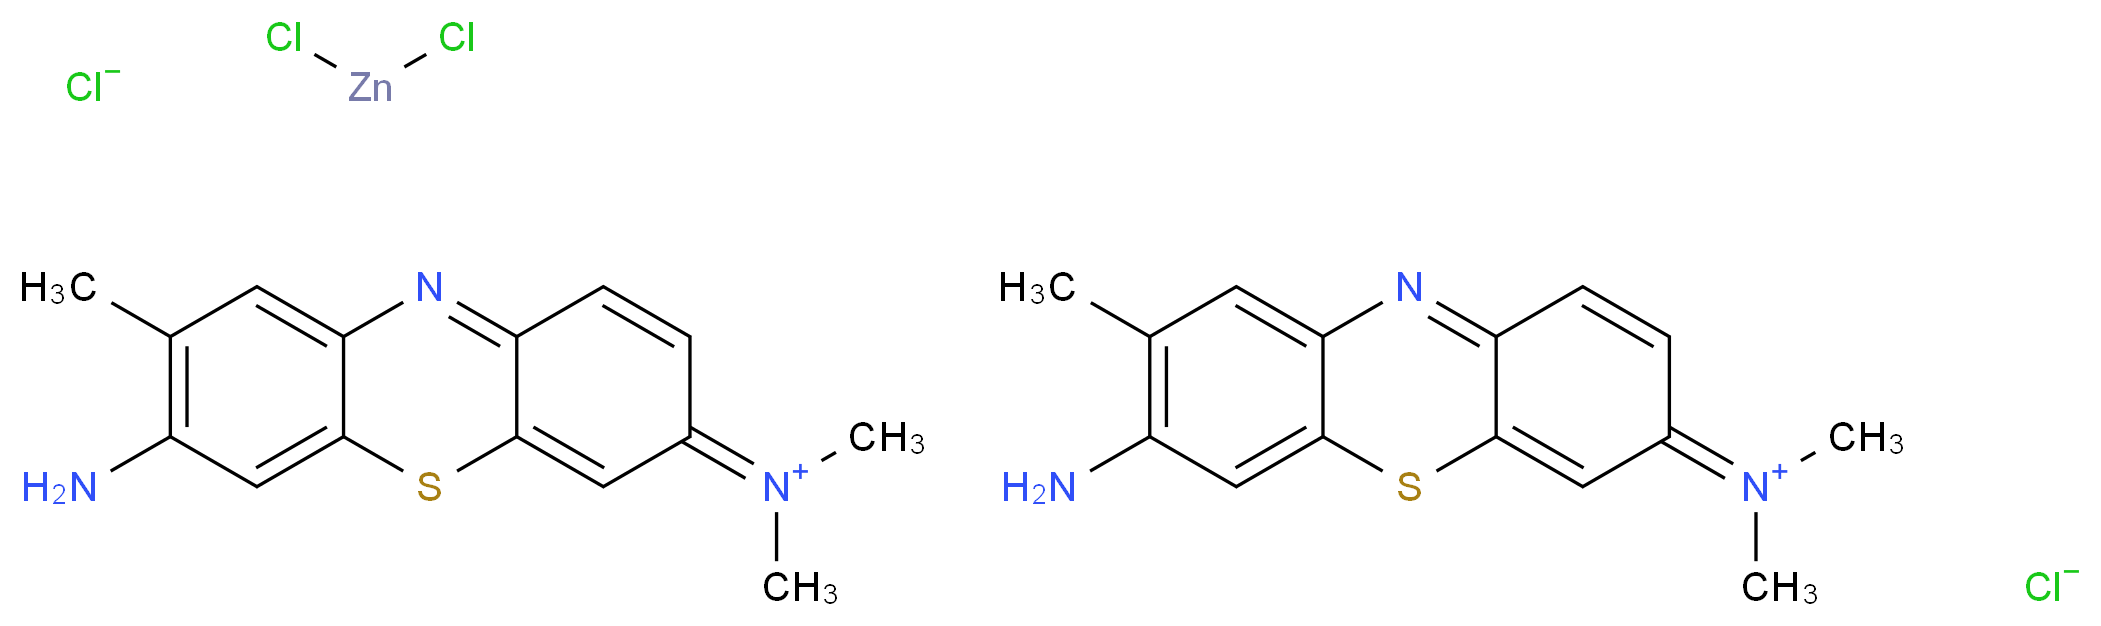 Toluidine Blue_Molecular_structure_CAS_6586-04-5)